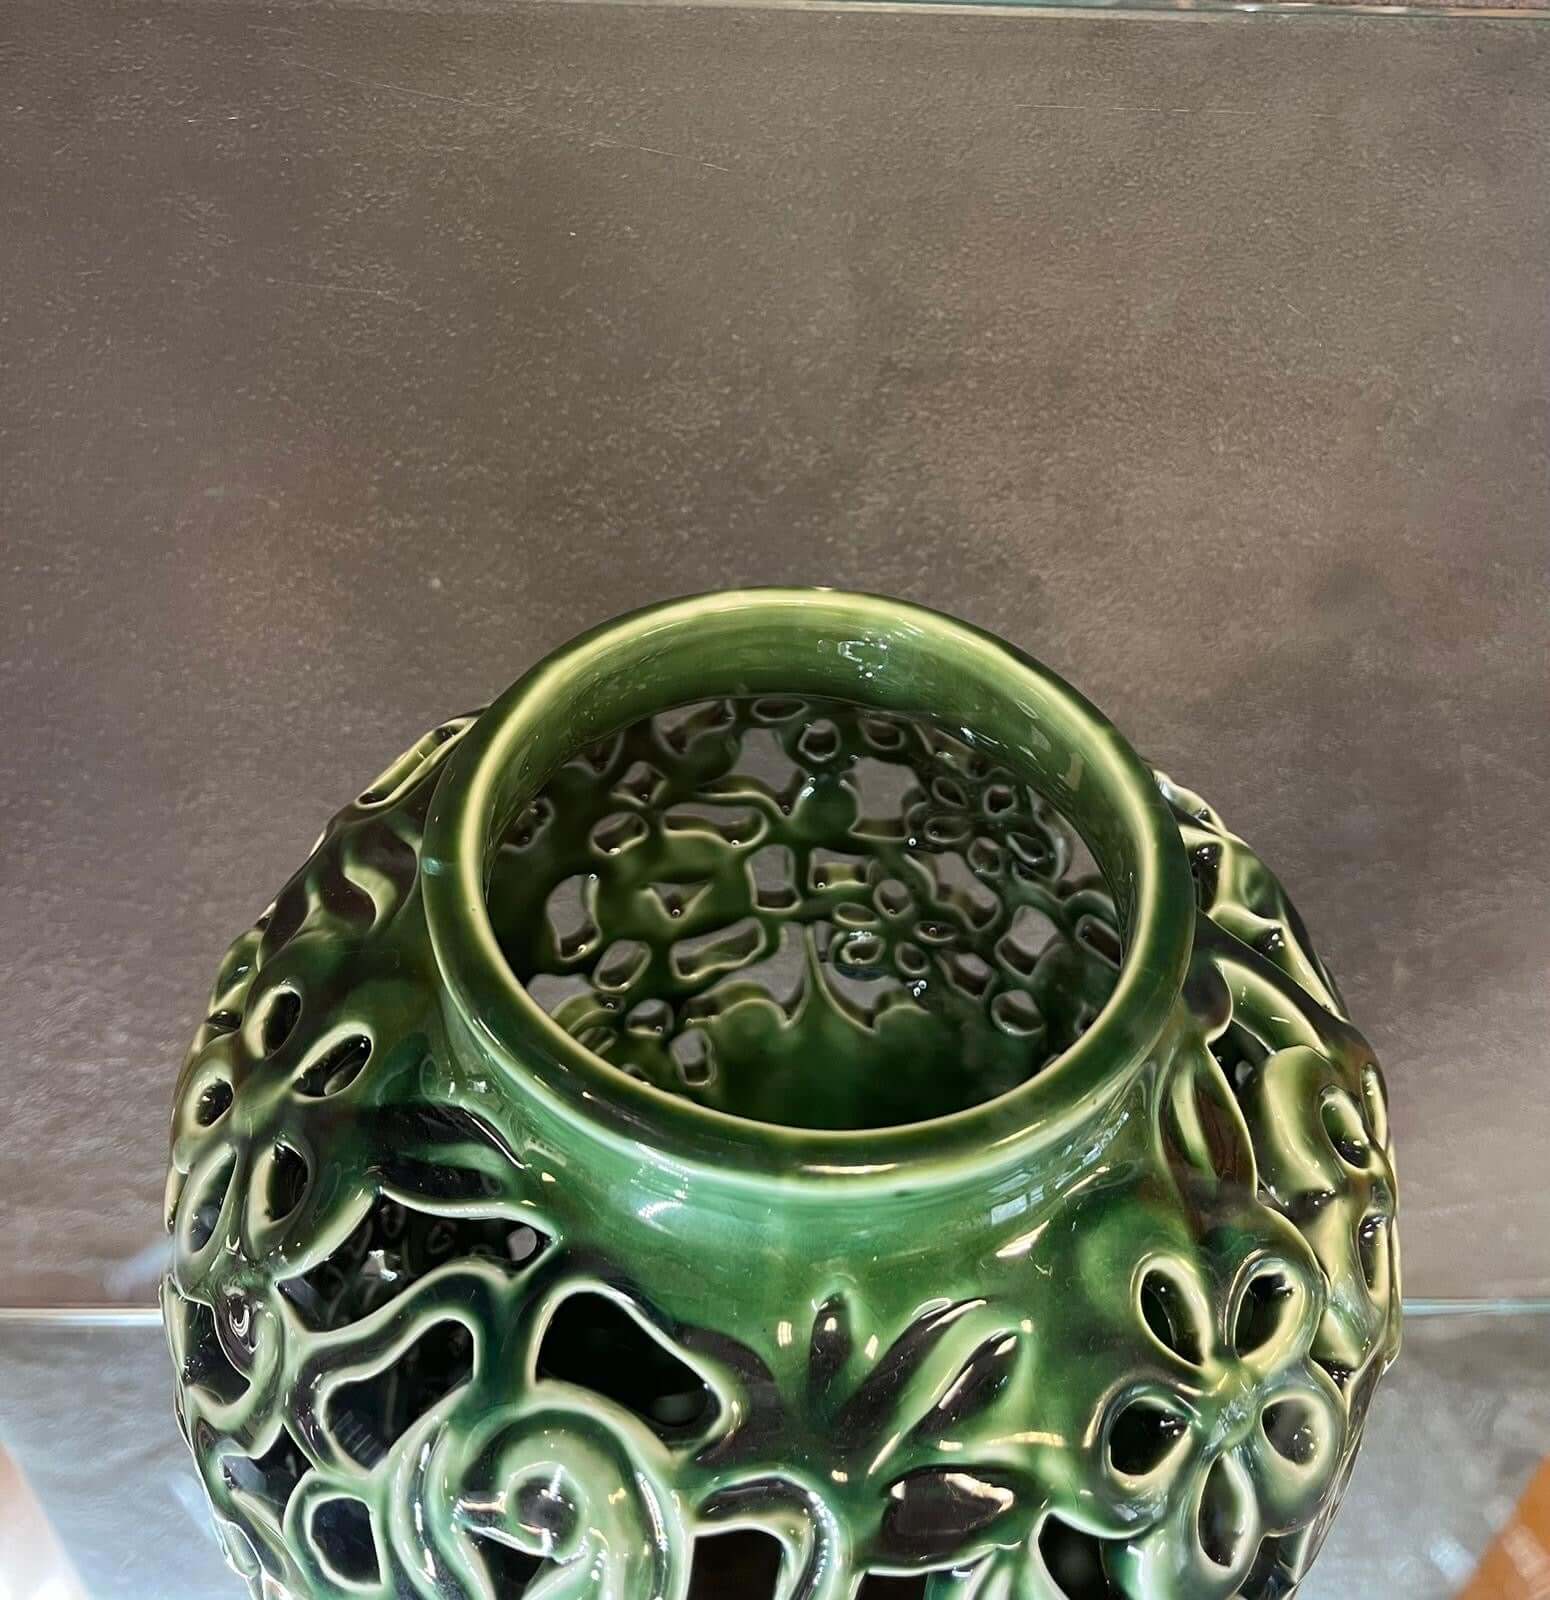 Glazed Green Flower Craved Vase - HighTouch 